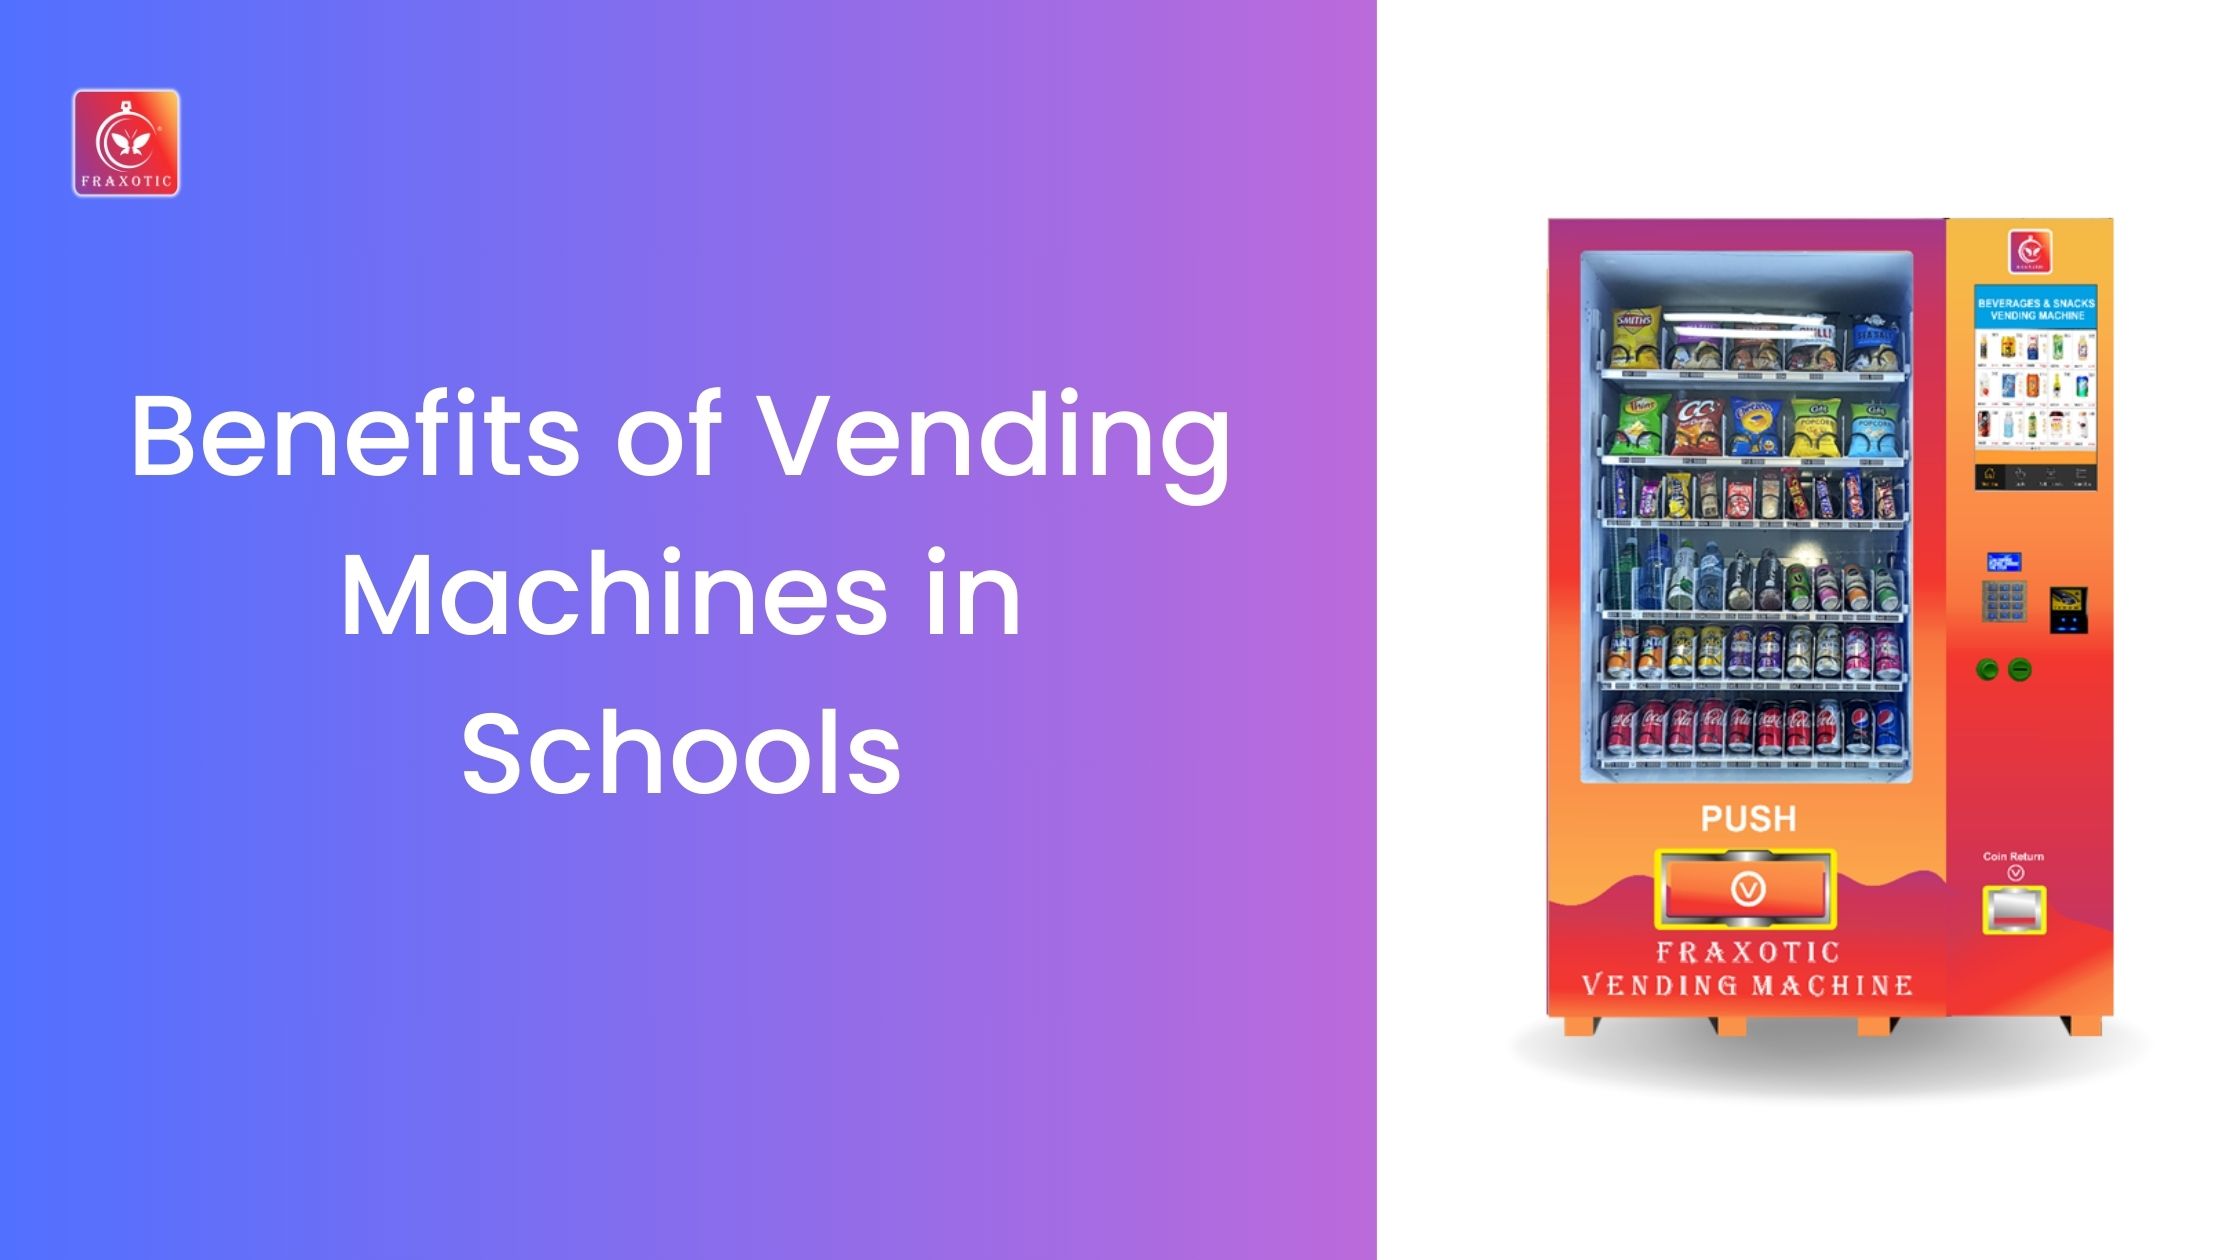 Benefits of Vending Machines in Schools